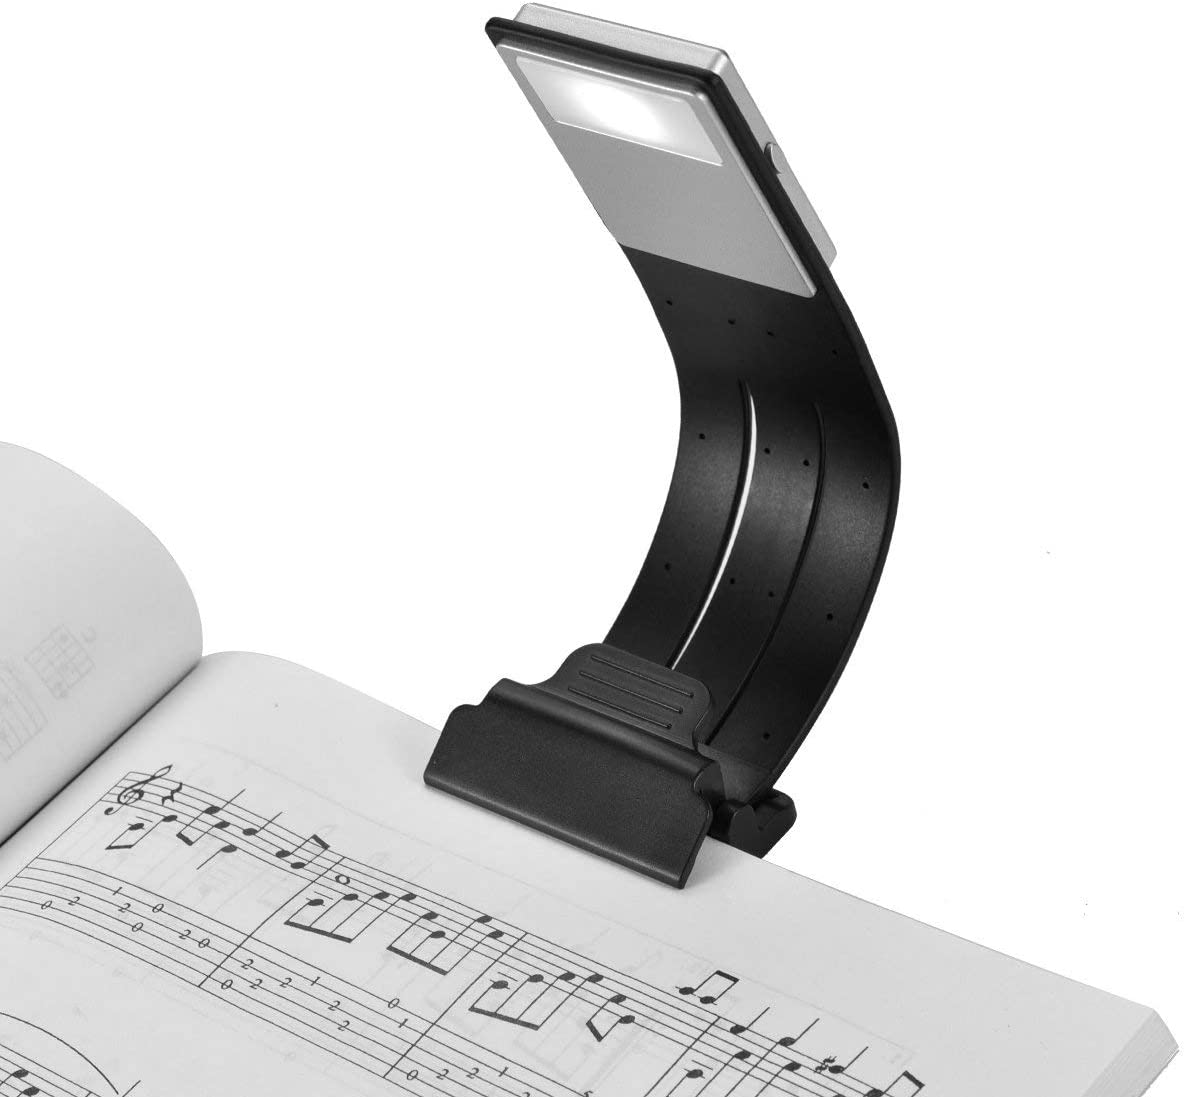 LOAMO 클립 온 북 라이트 USB 충전식 LED 독서 램프 아이케어 더블 북마크 데스크 침대 유연하고 책 ipad 등을 위한 4레벨 조광 가능 블랙